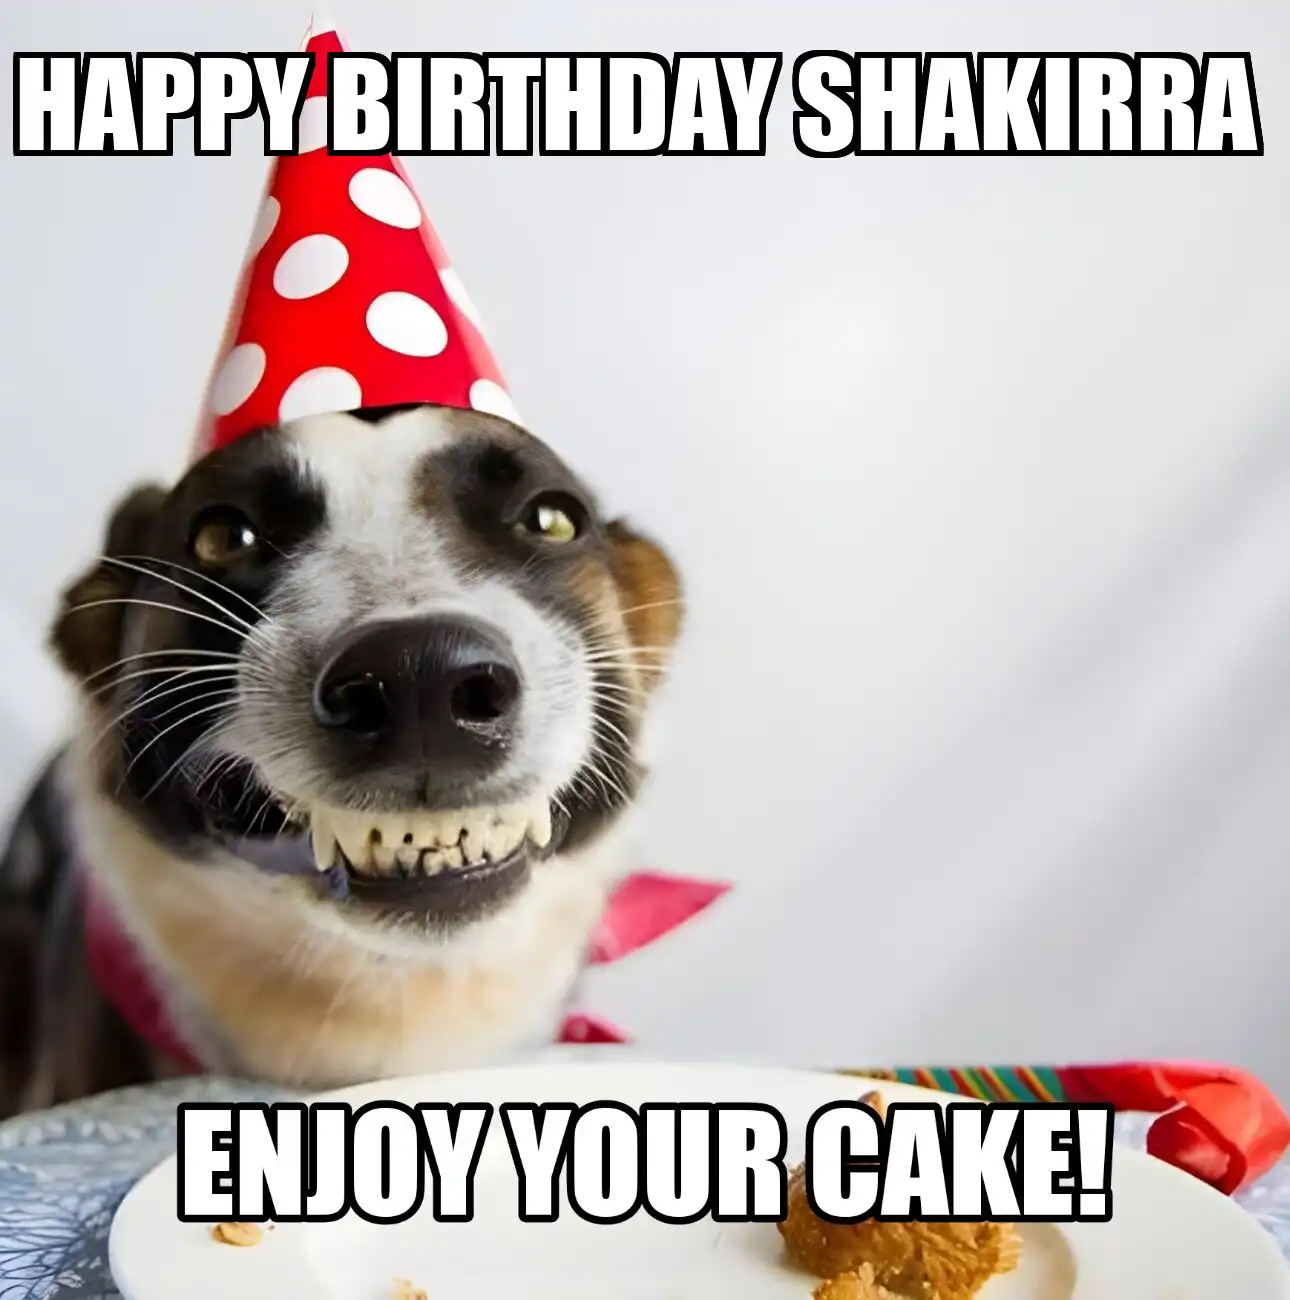 Happy Birthday Shakirra Enjoy Your Cake Dog Meme